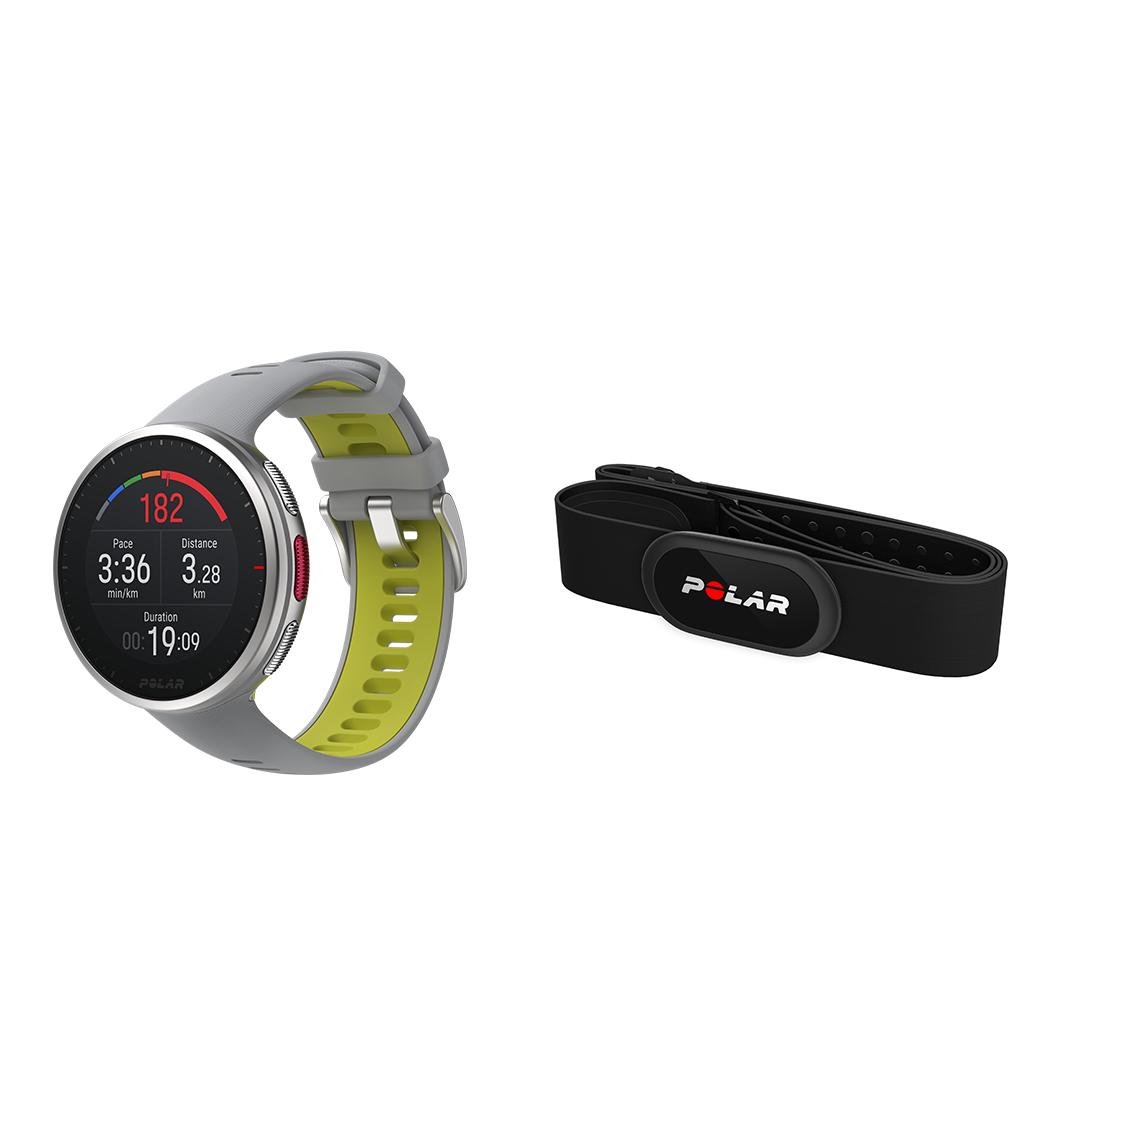 Descuento - Sensor de Frecuencia Cardíaca de banda, Ant+ compatible con  Garmin, Polar, etc.